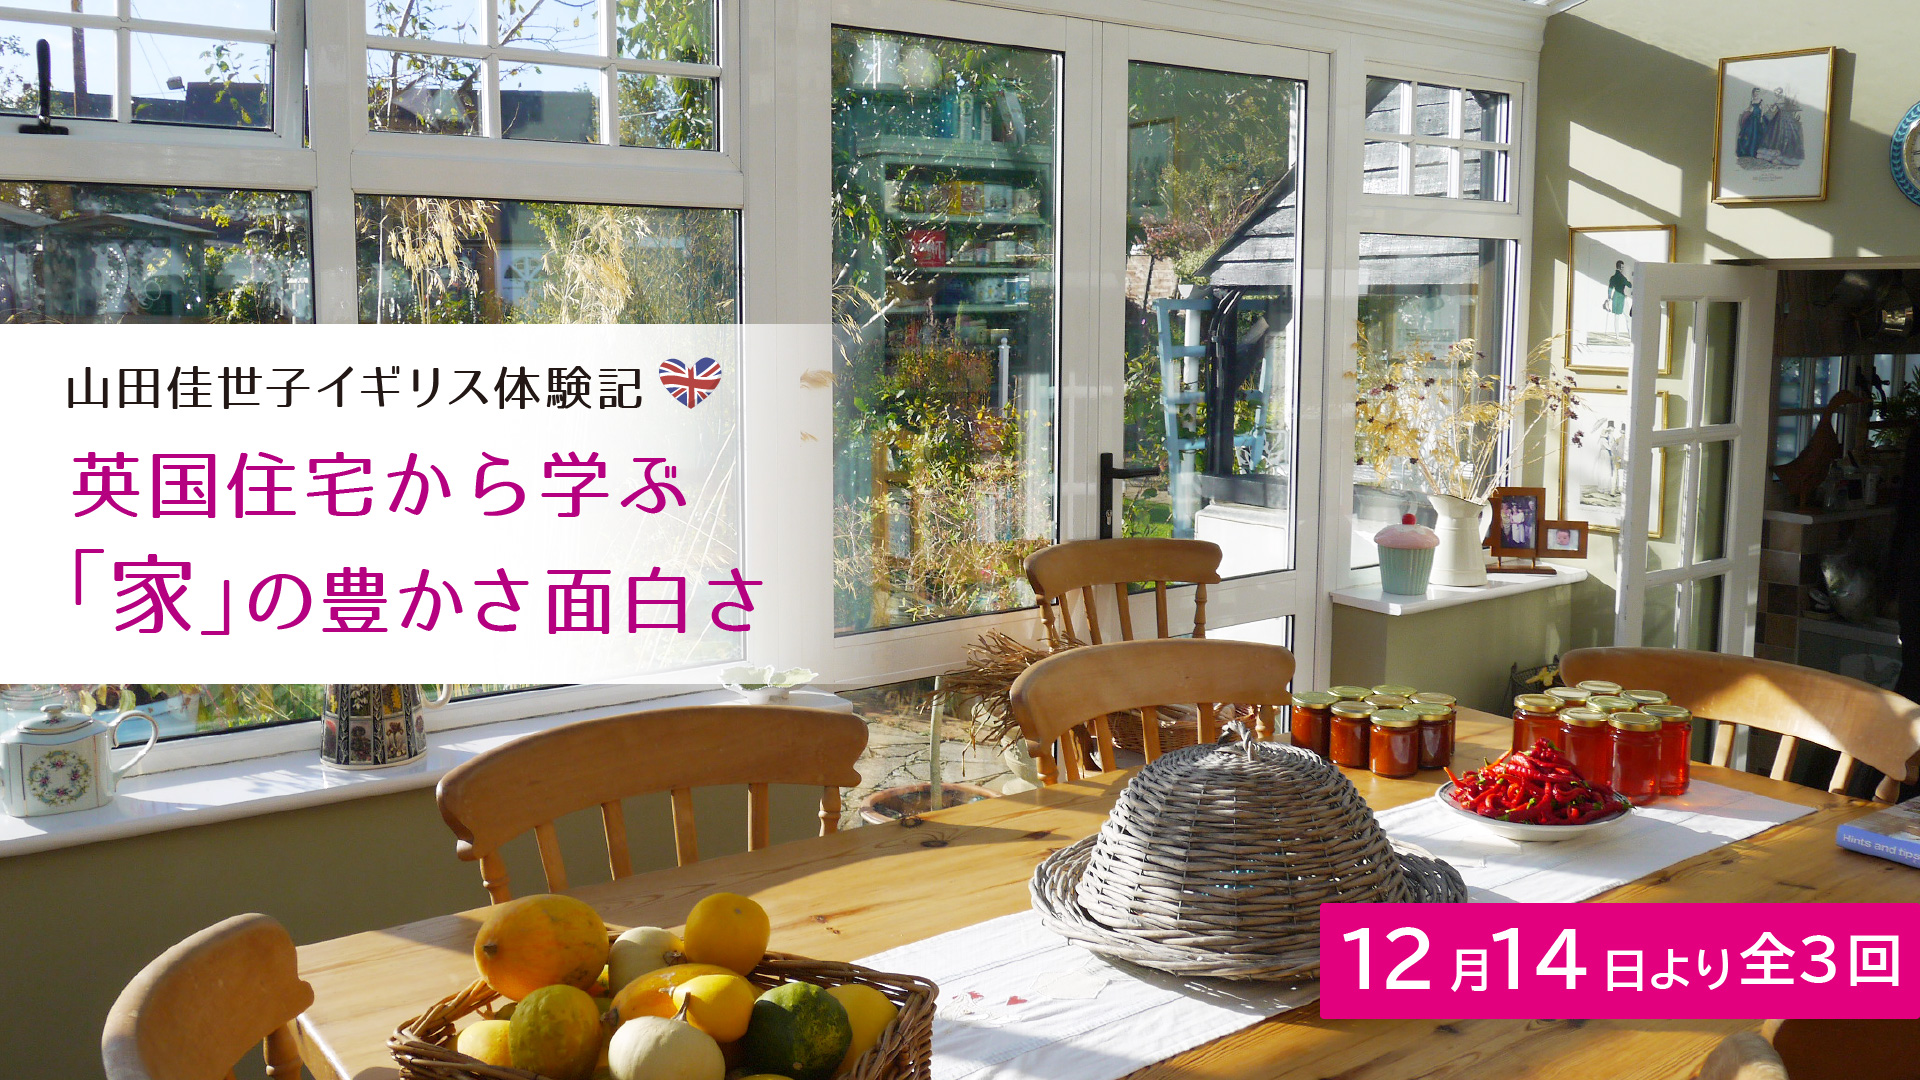 山田佳世子イギリス体験記英国住宅から学ぶ 「家」の豊かさ面白さ